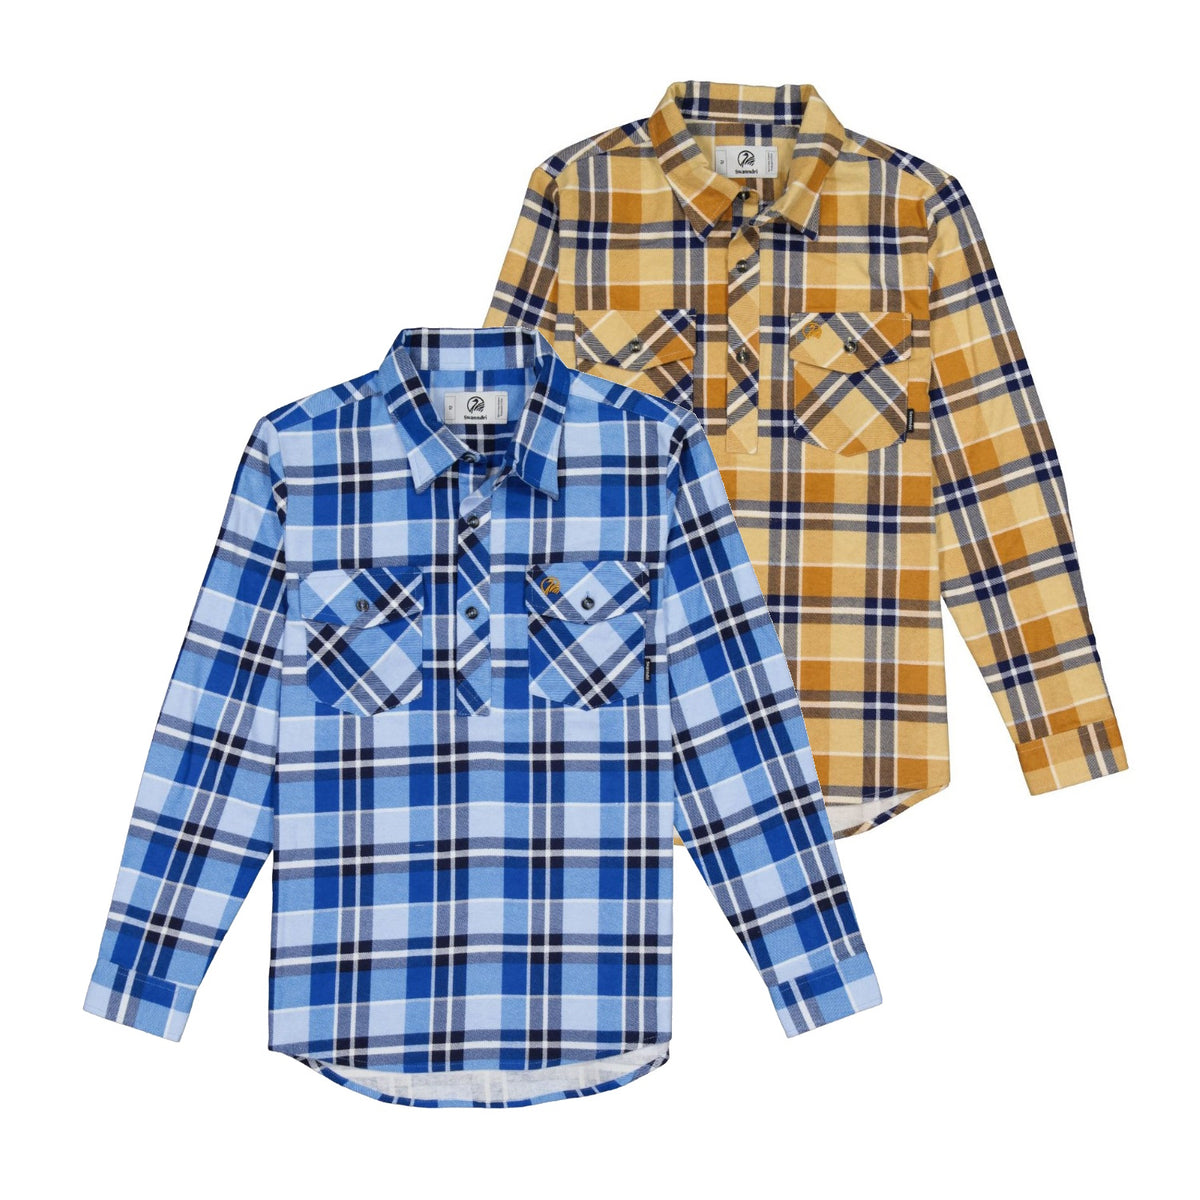 Swanndri Kids Egmont Half Button Flannelette Shirt Twin Pack in Arctic & Sandstone